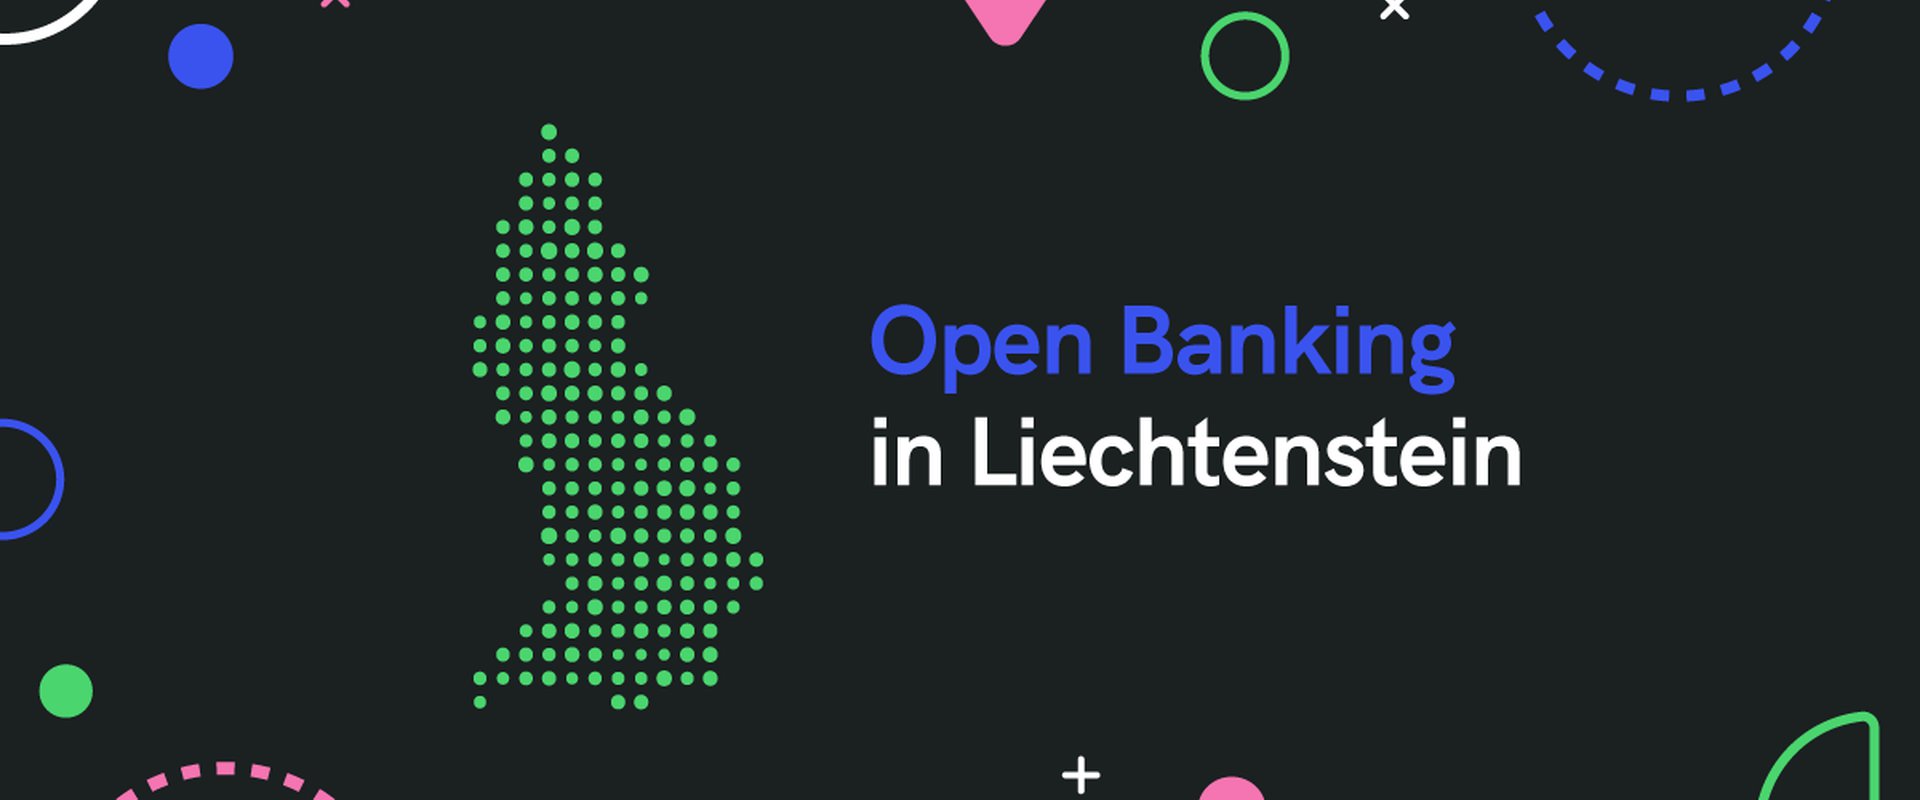 Open Banking in Liechtenstein